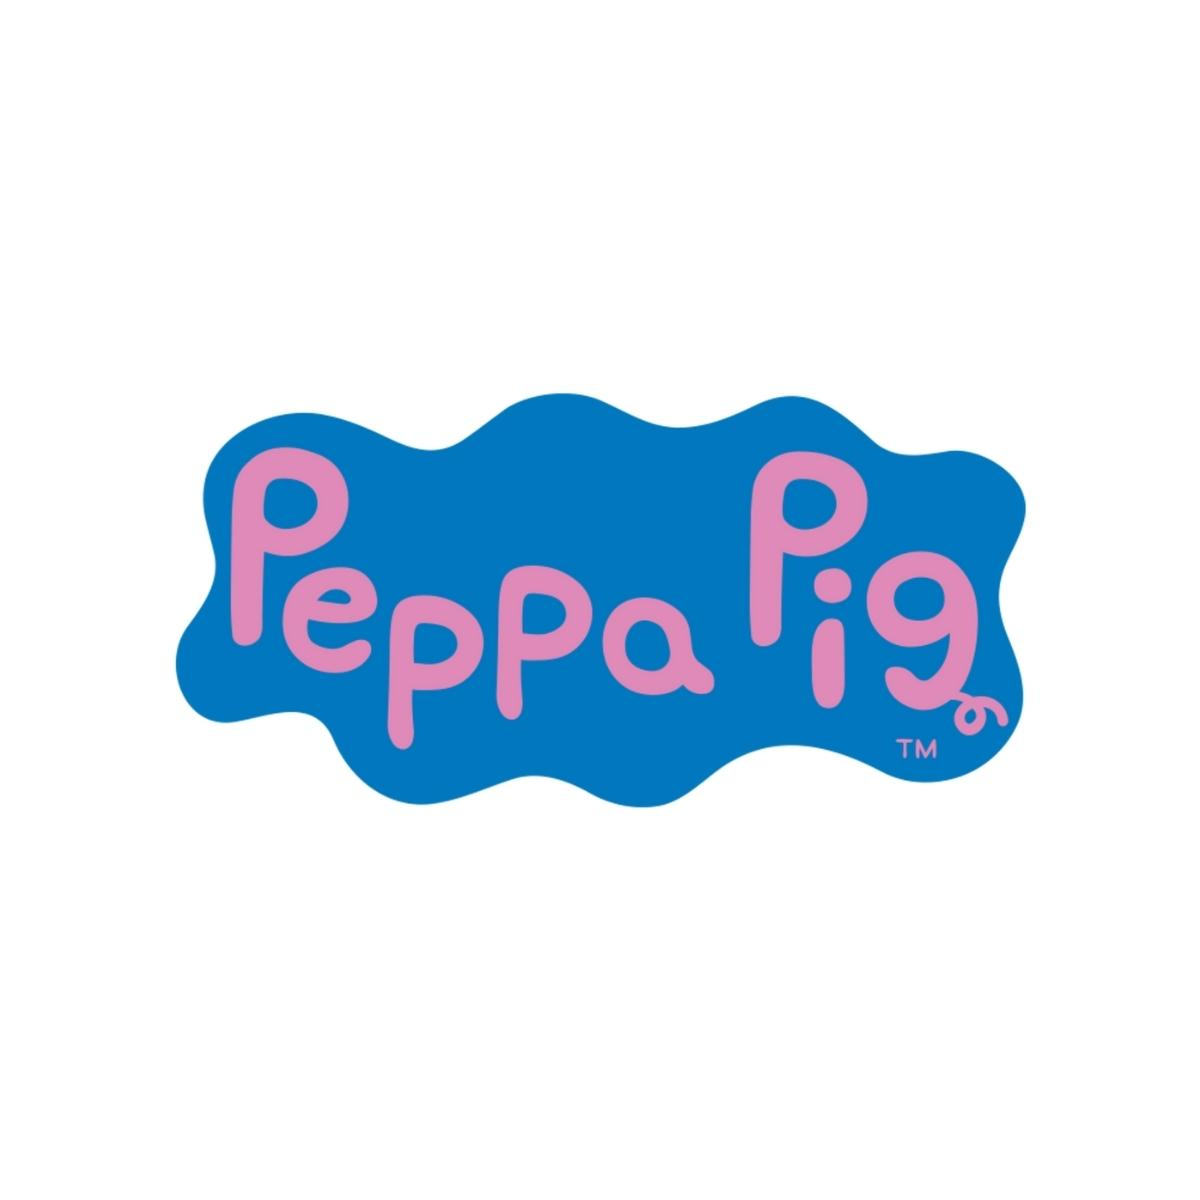 O fenômeno Peppa Pig – UNI DUNI KIDS